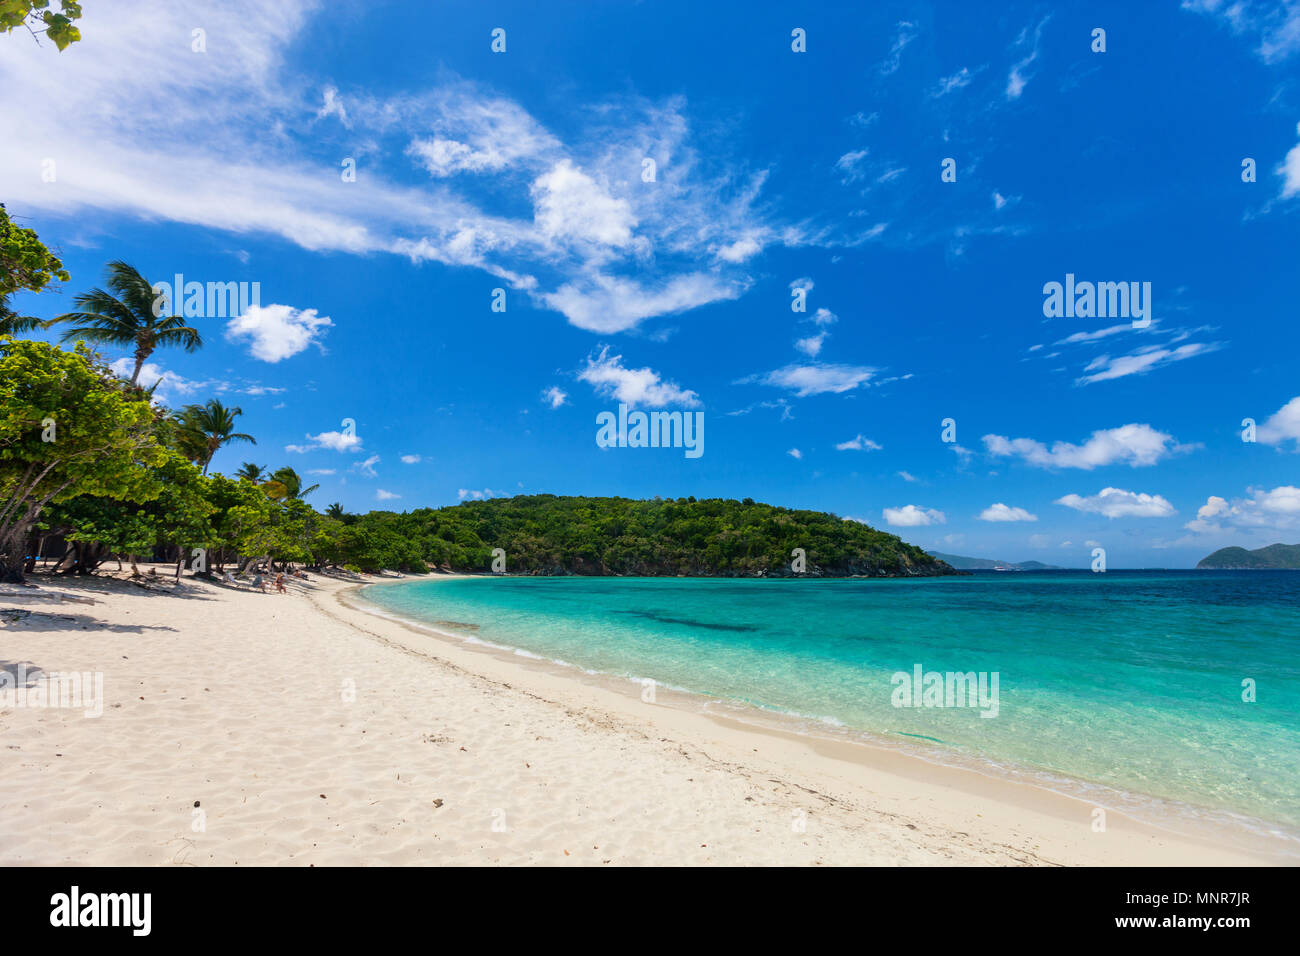 Hermosa playa tropical de arenas blancas, mar turquesa y azul cielo agua en St John, Islas Vírgenes de los Estados Unidos en el Caribe Foto de stock